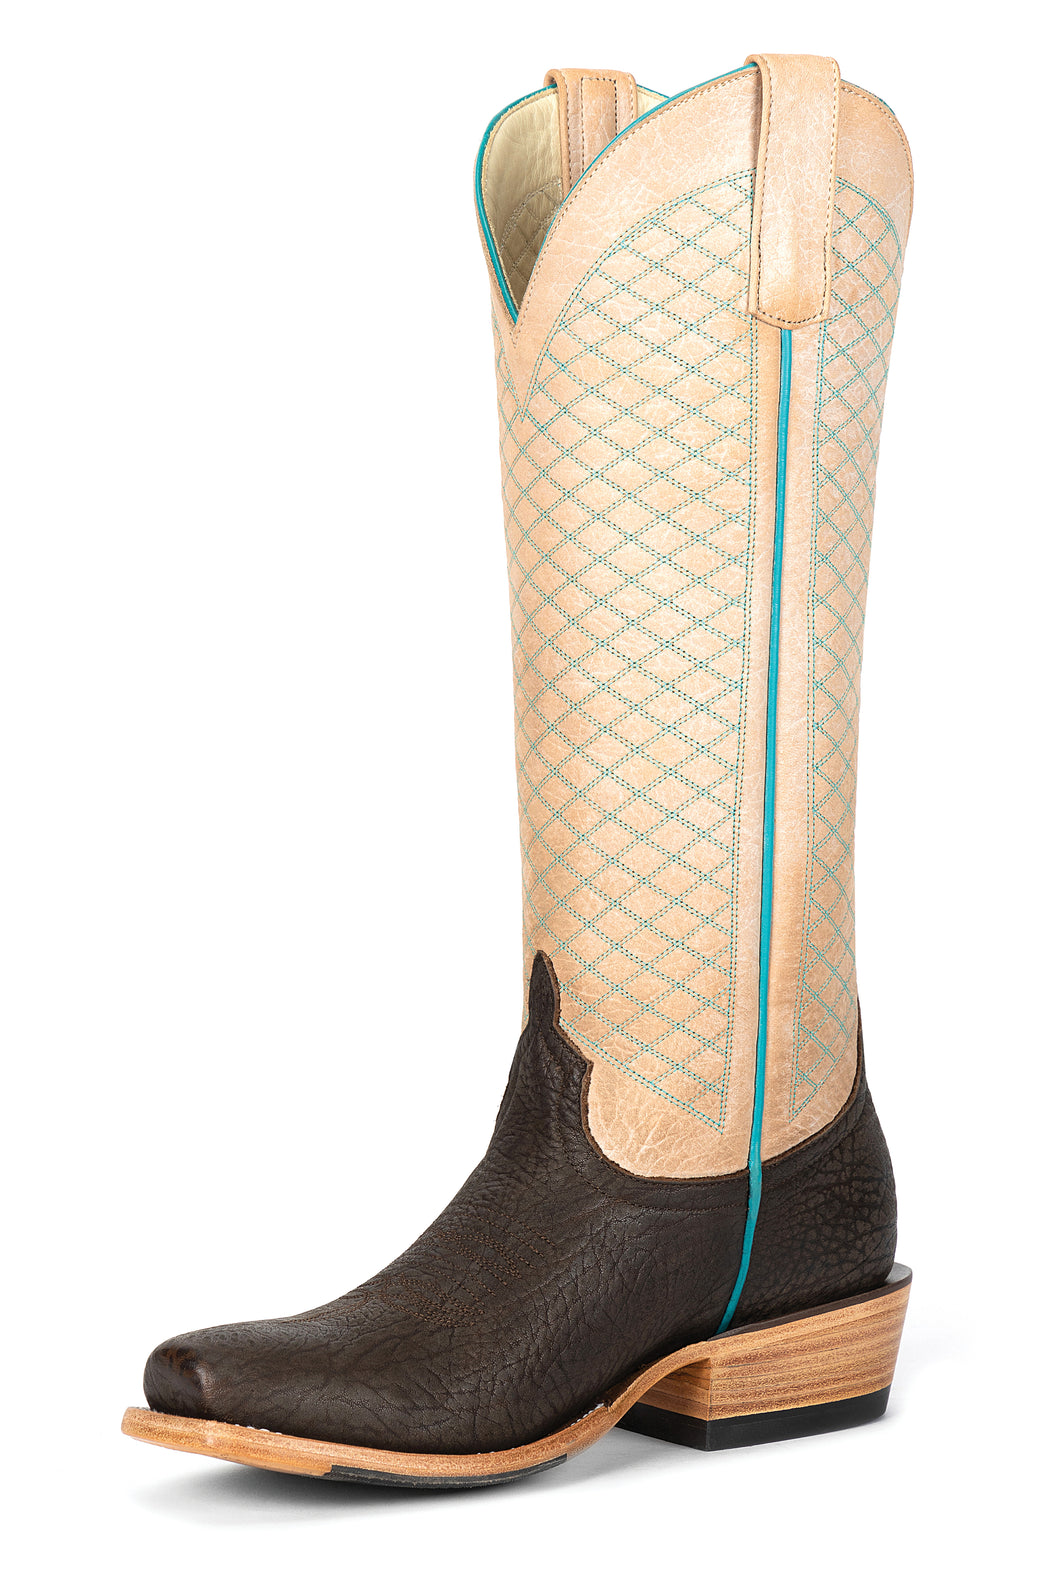 Macie Bean Top Hand Grey Rodeo Shrunken Shoulder Ladies' Boot